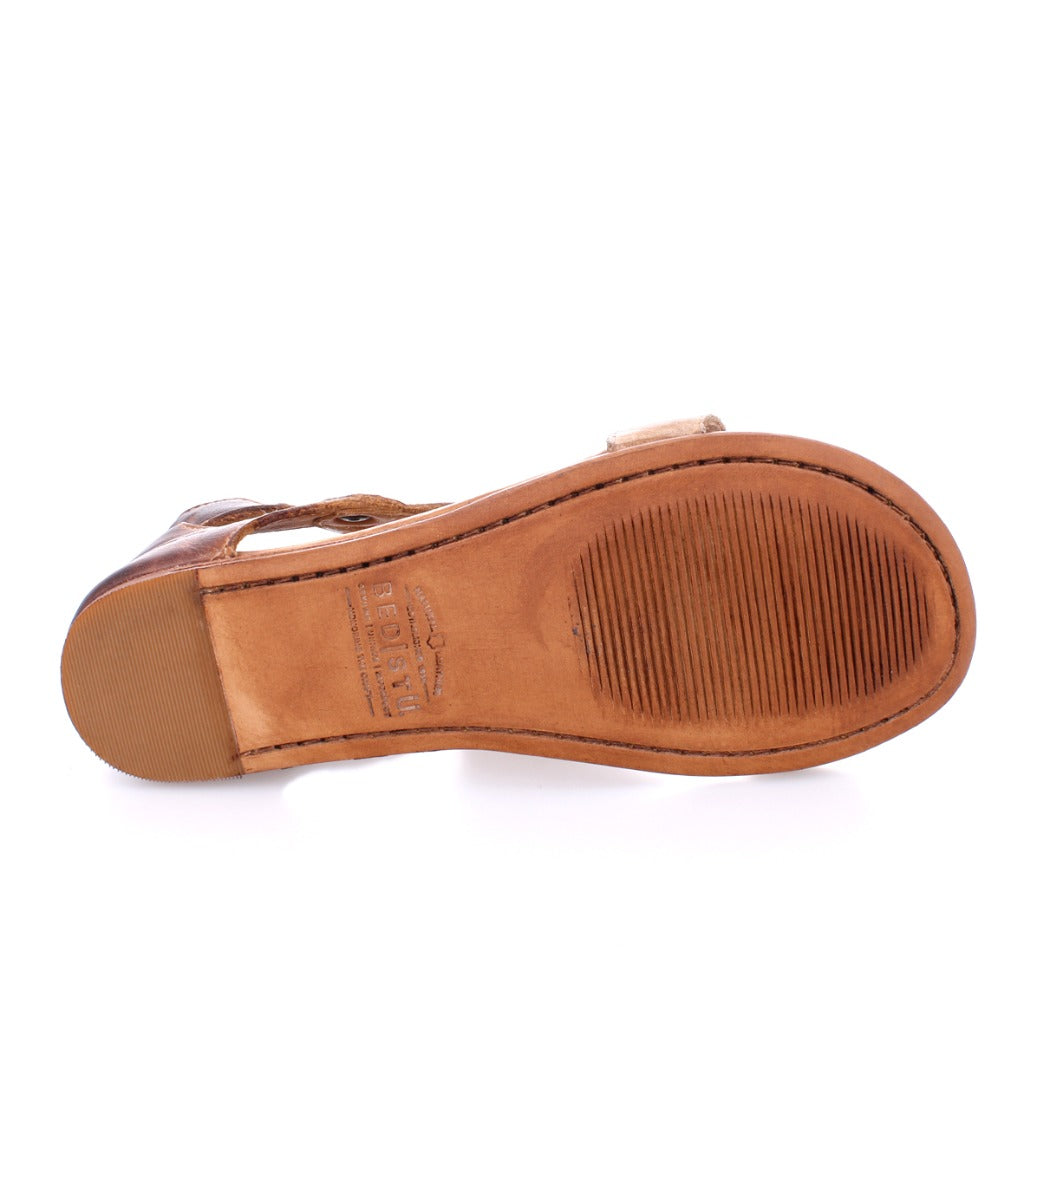 Sole of Bed Stu Soto women's sandal in tan.